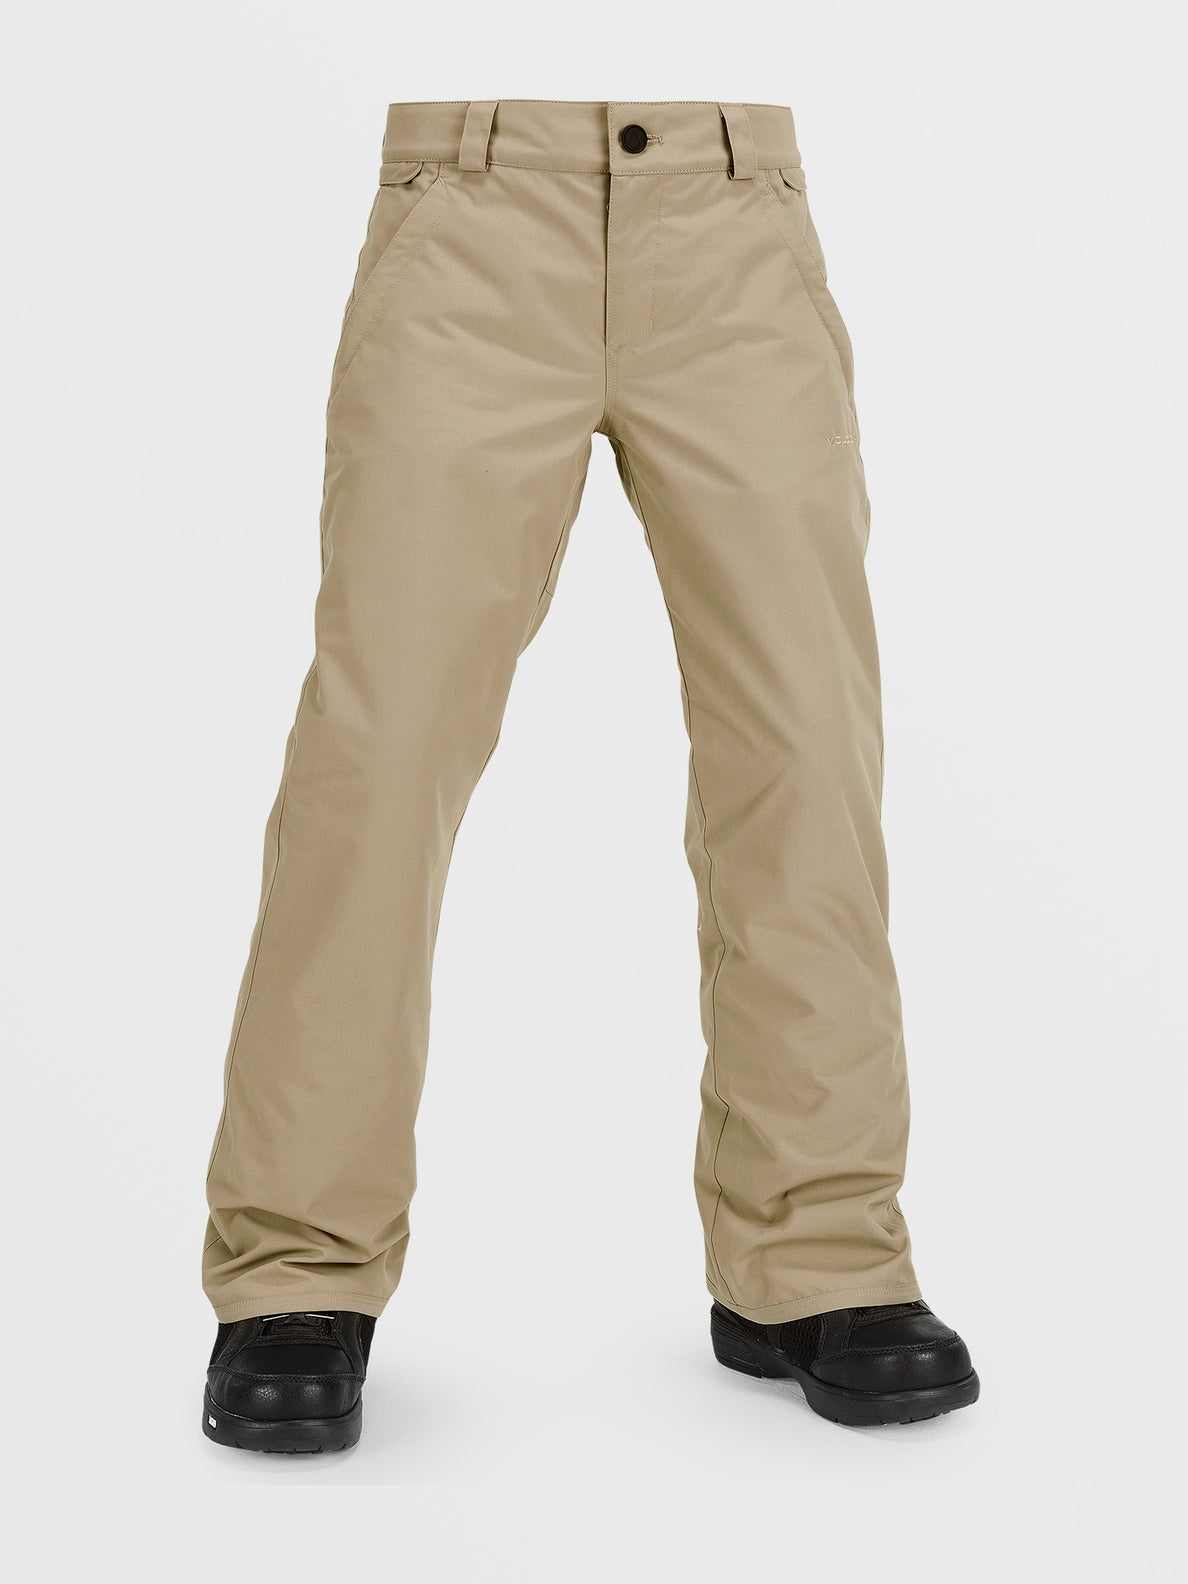 Kids Freakin Chino Youth Insulated Pants - Dark Khaki